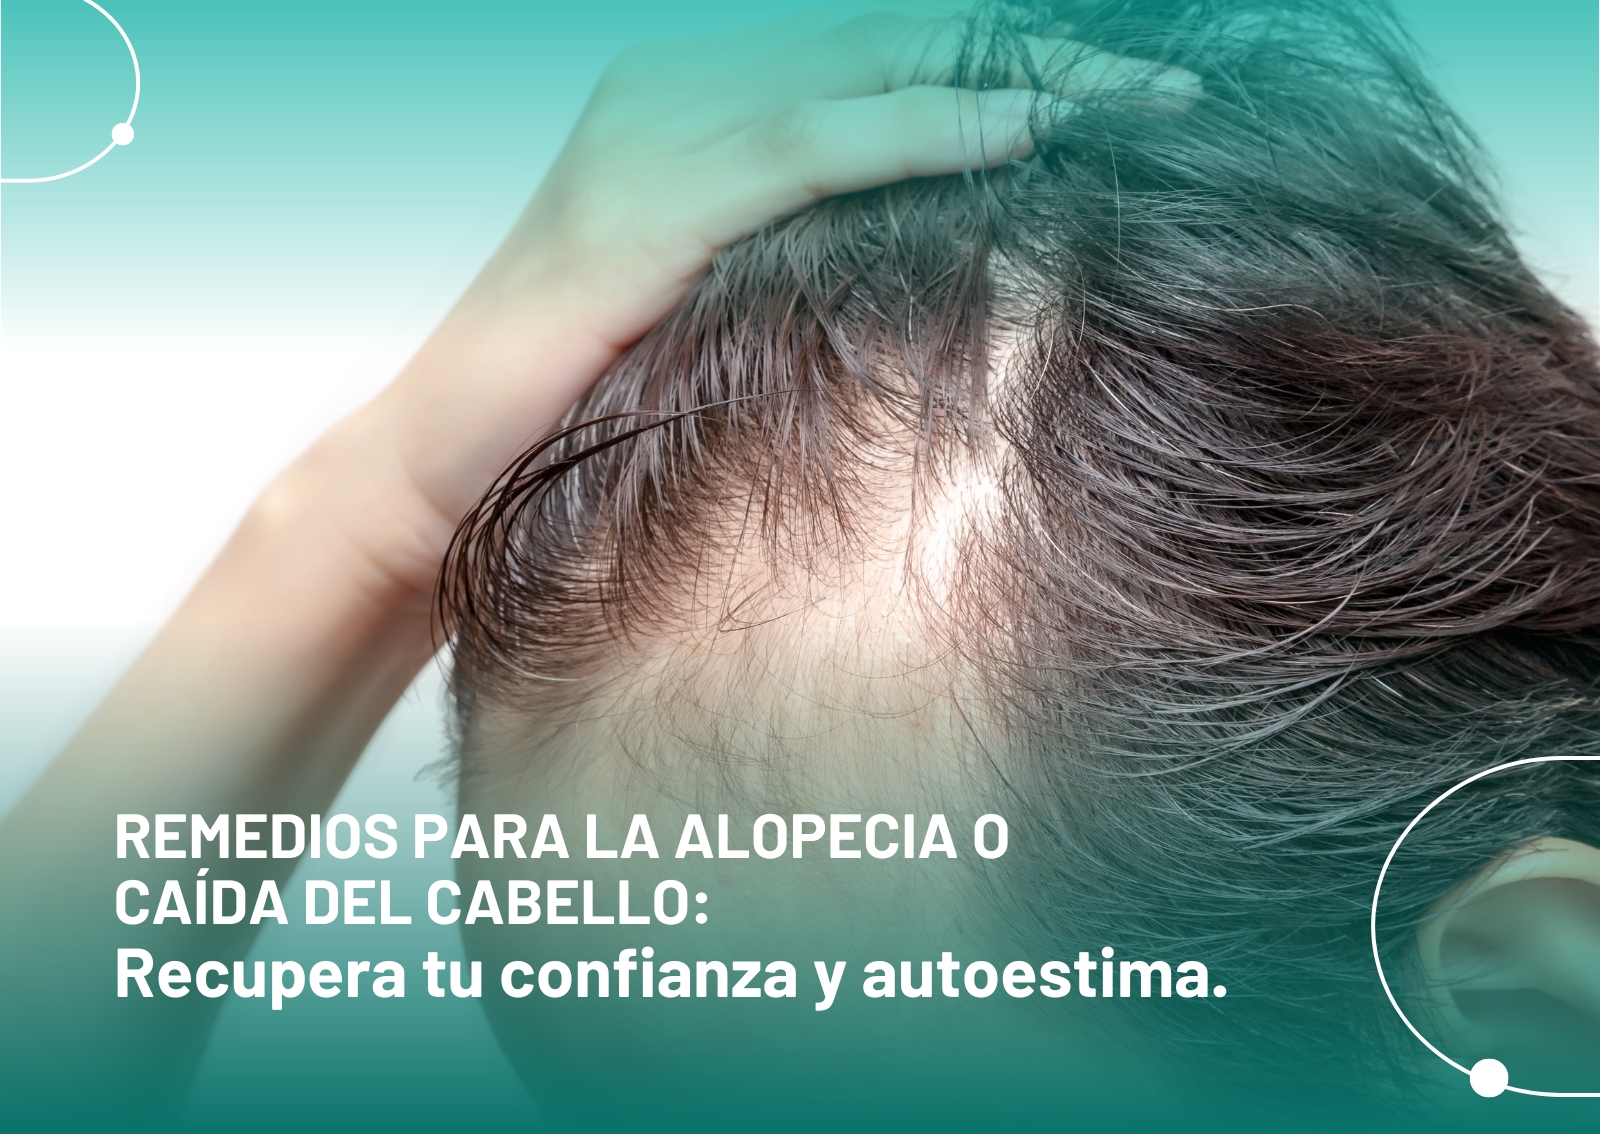 Remedios para la alopecia o caída del cabello